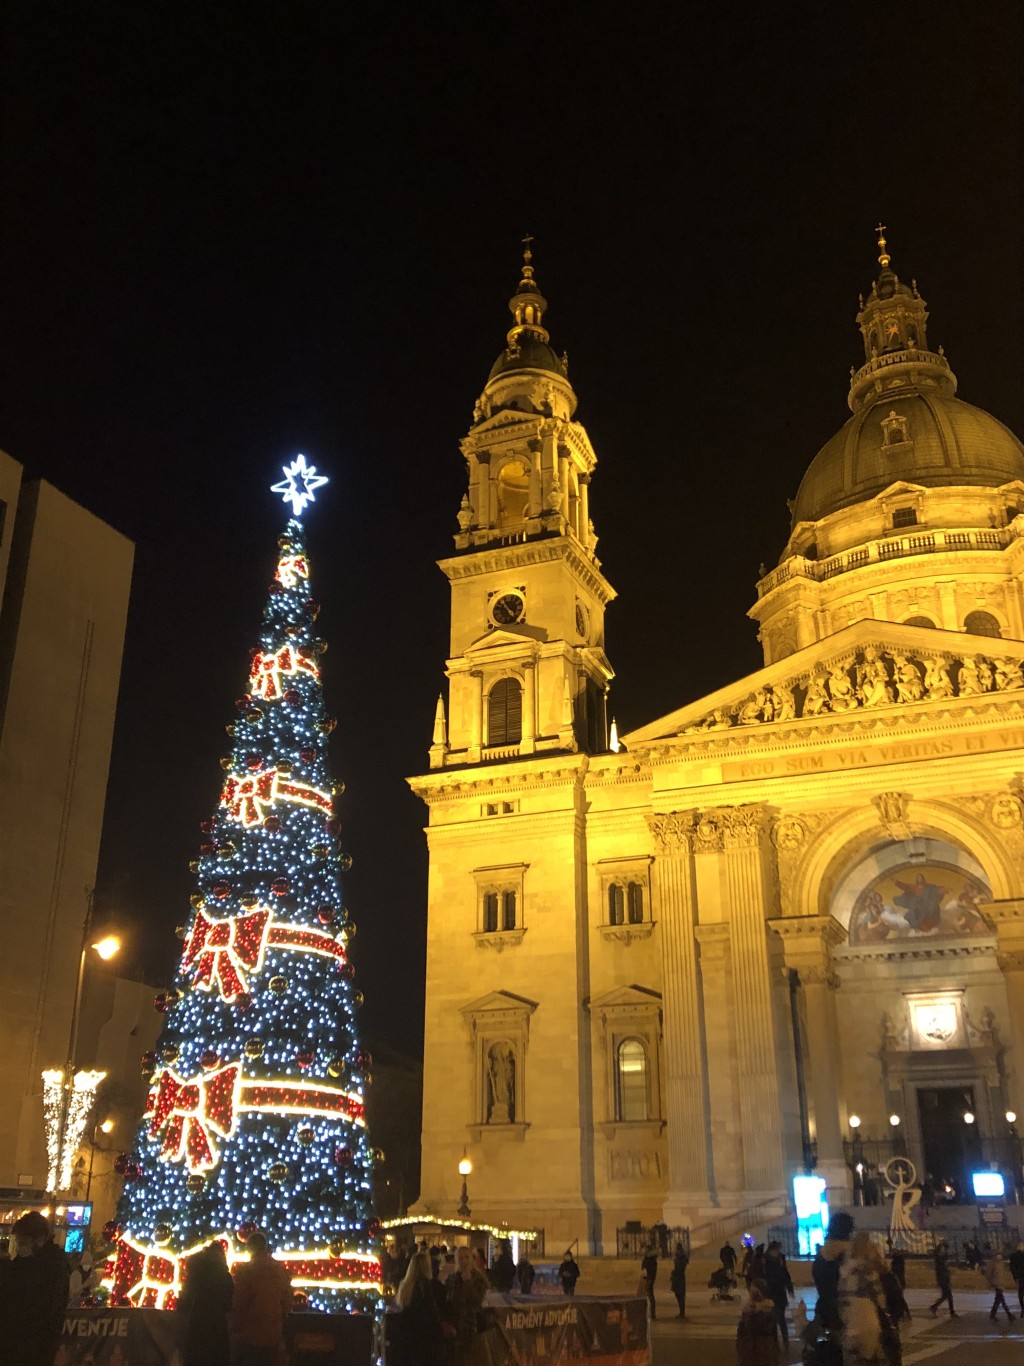 Anna曾跟接待家庭的妹妹在聖誕前夕到布達佩斯欣賞聖誕燈飾。